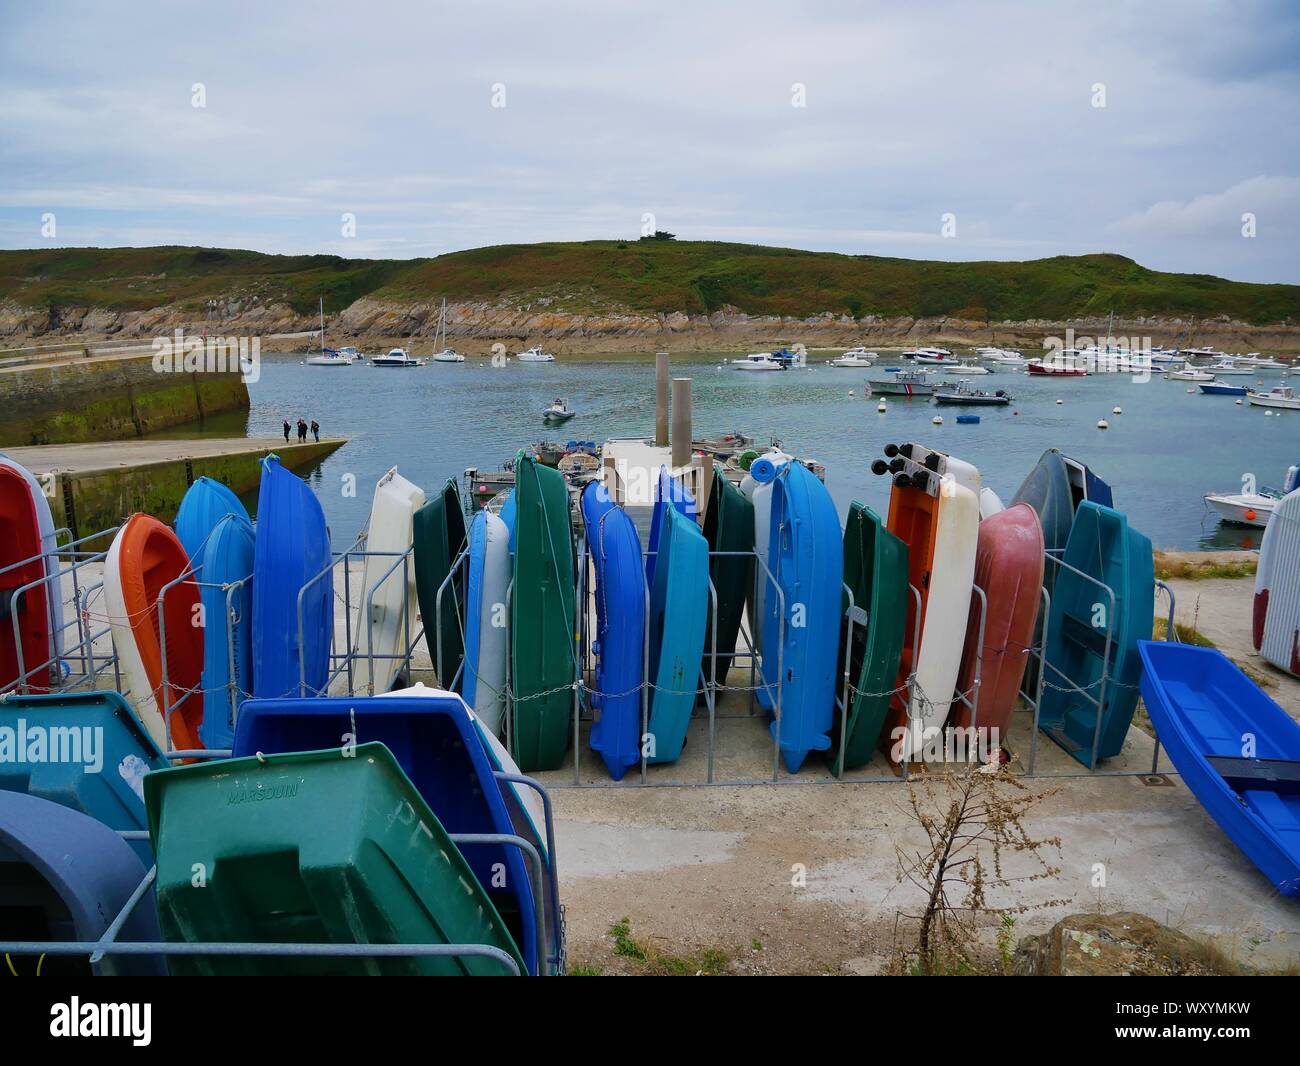 Barques pour la peche au Port de Peche du conquet,peche artisanale / industrielle , Le port du conquet , brest , Bretagne Foto Stock